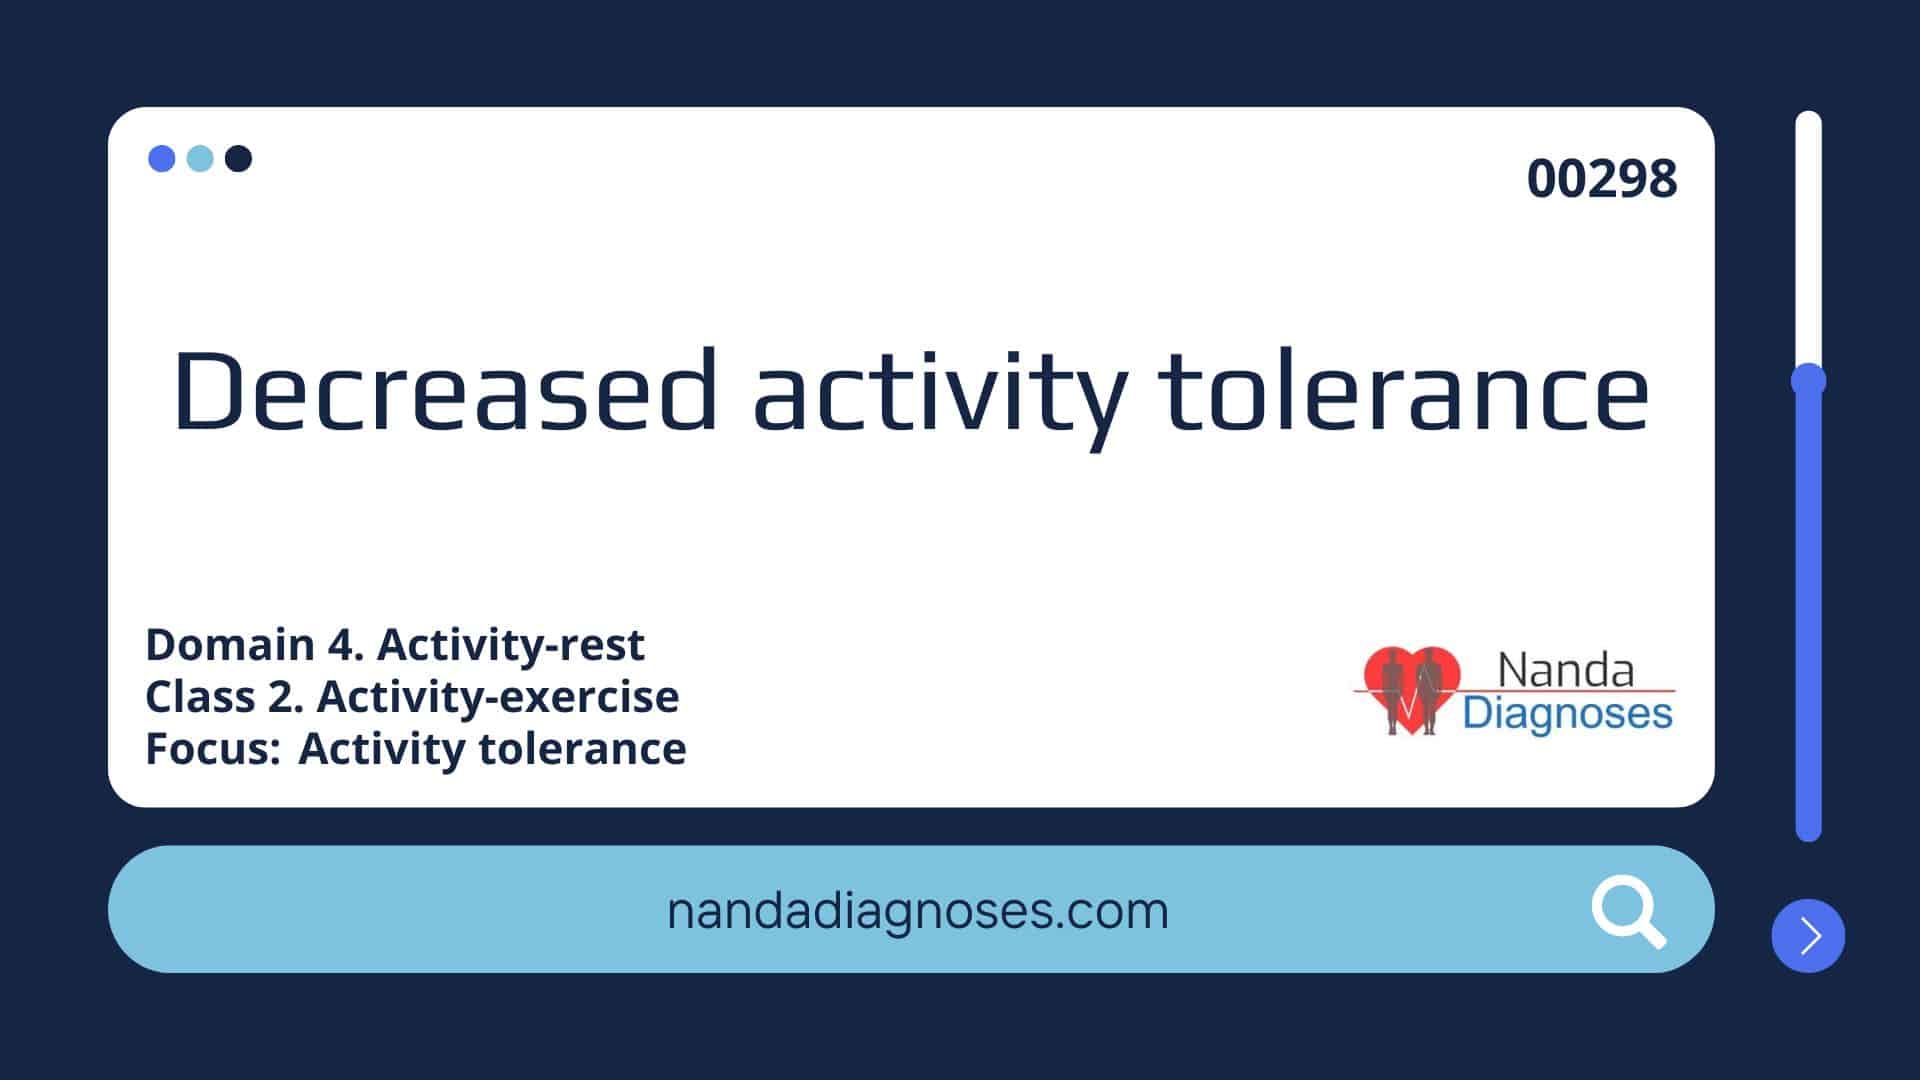 Nursing diagnosis Decreased activity tolerance